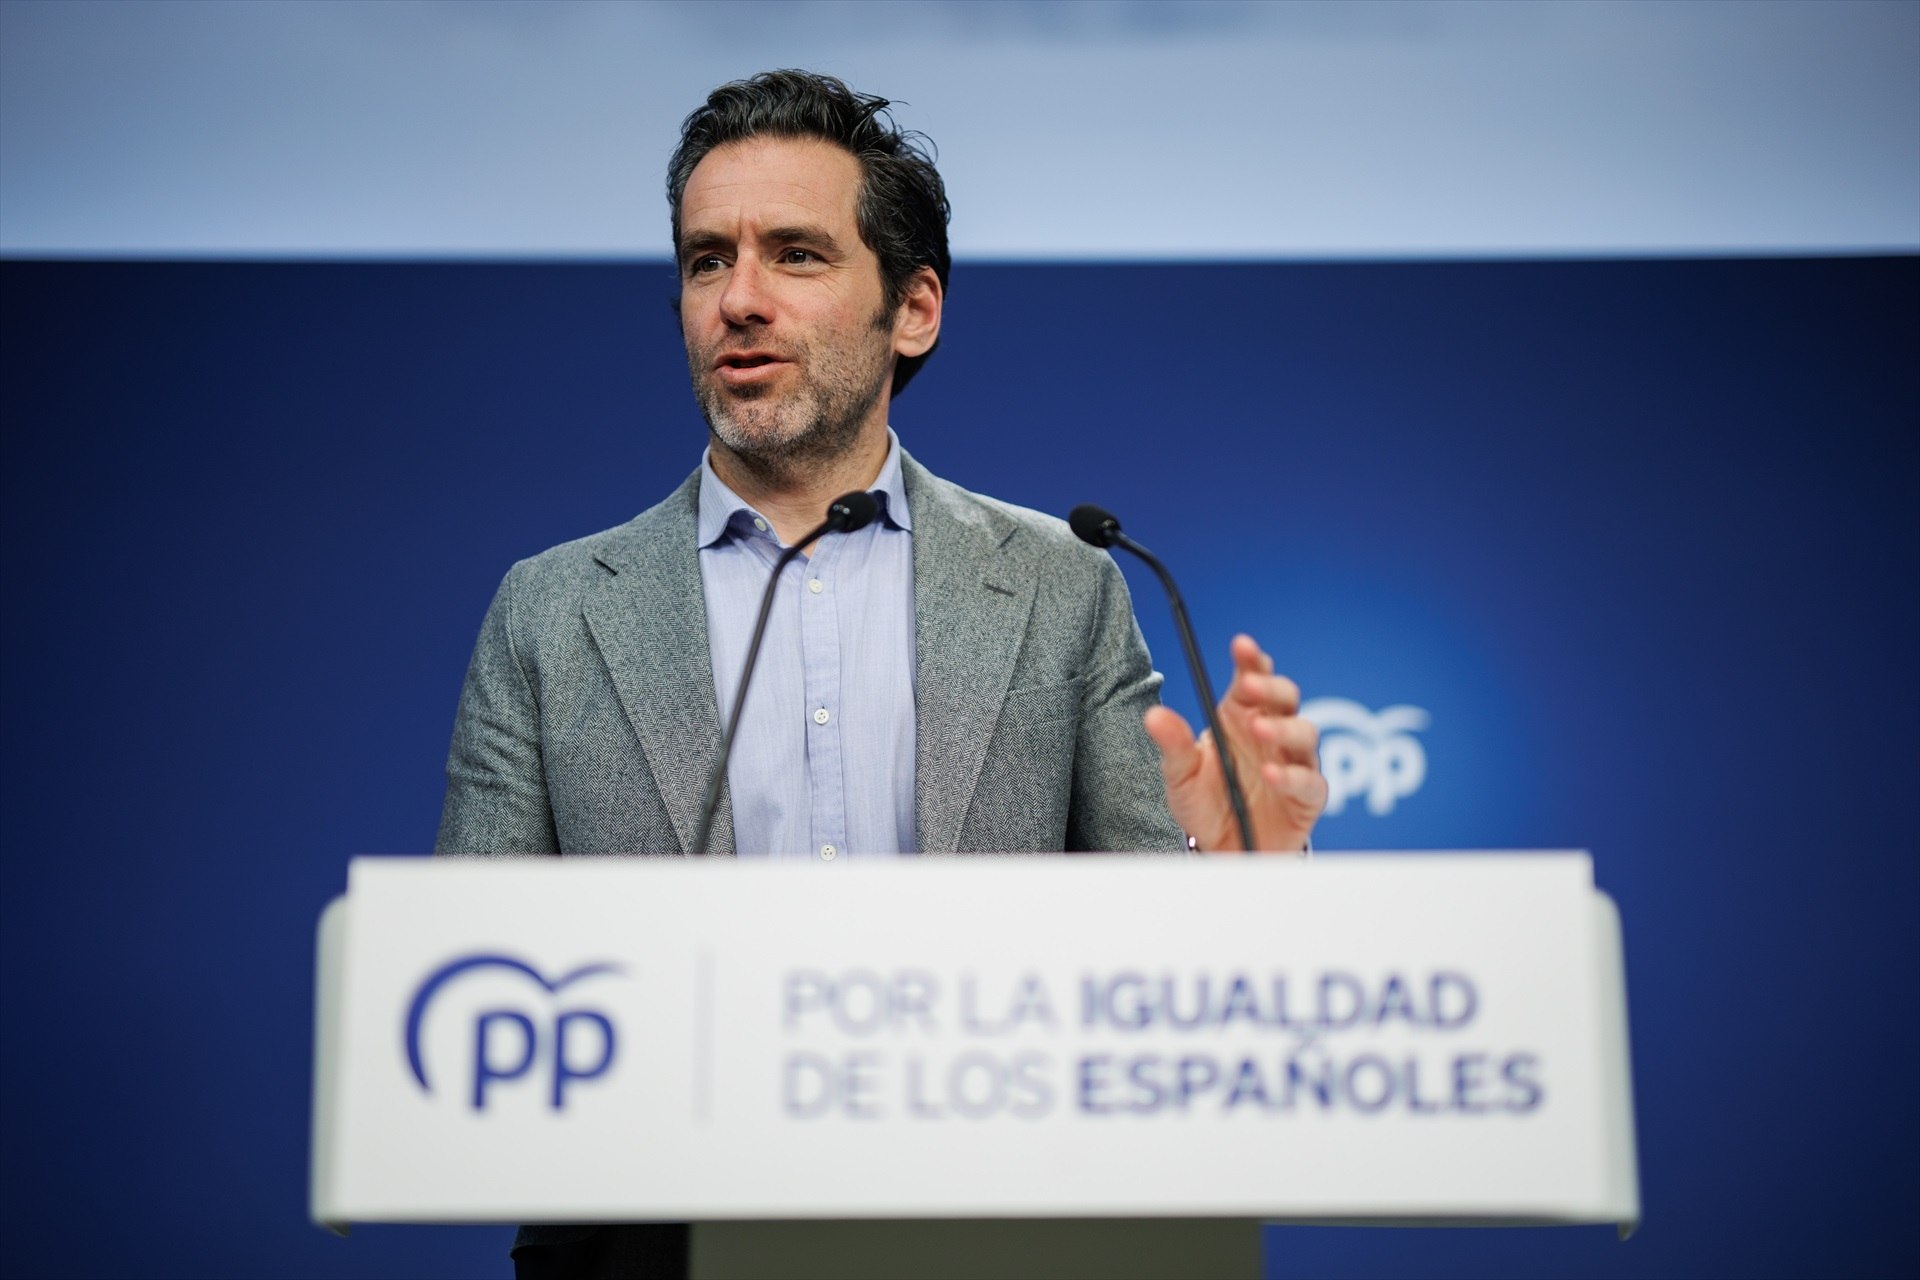 El PP presentará mociones en todos los ayuntamientos en contra del acuerdo PSOE-Bildu en Pamplona